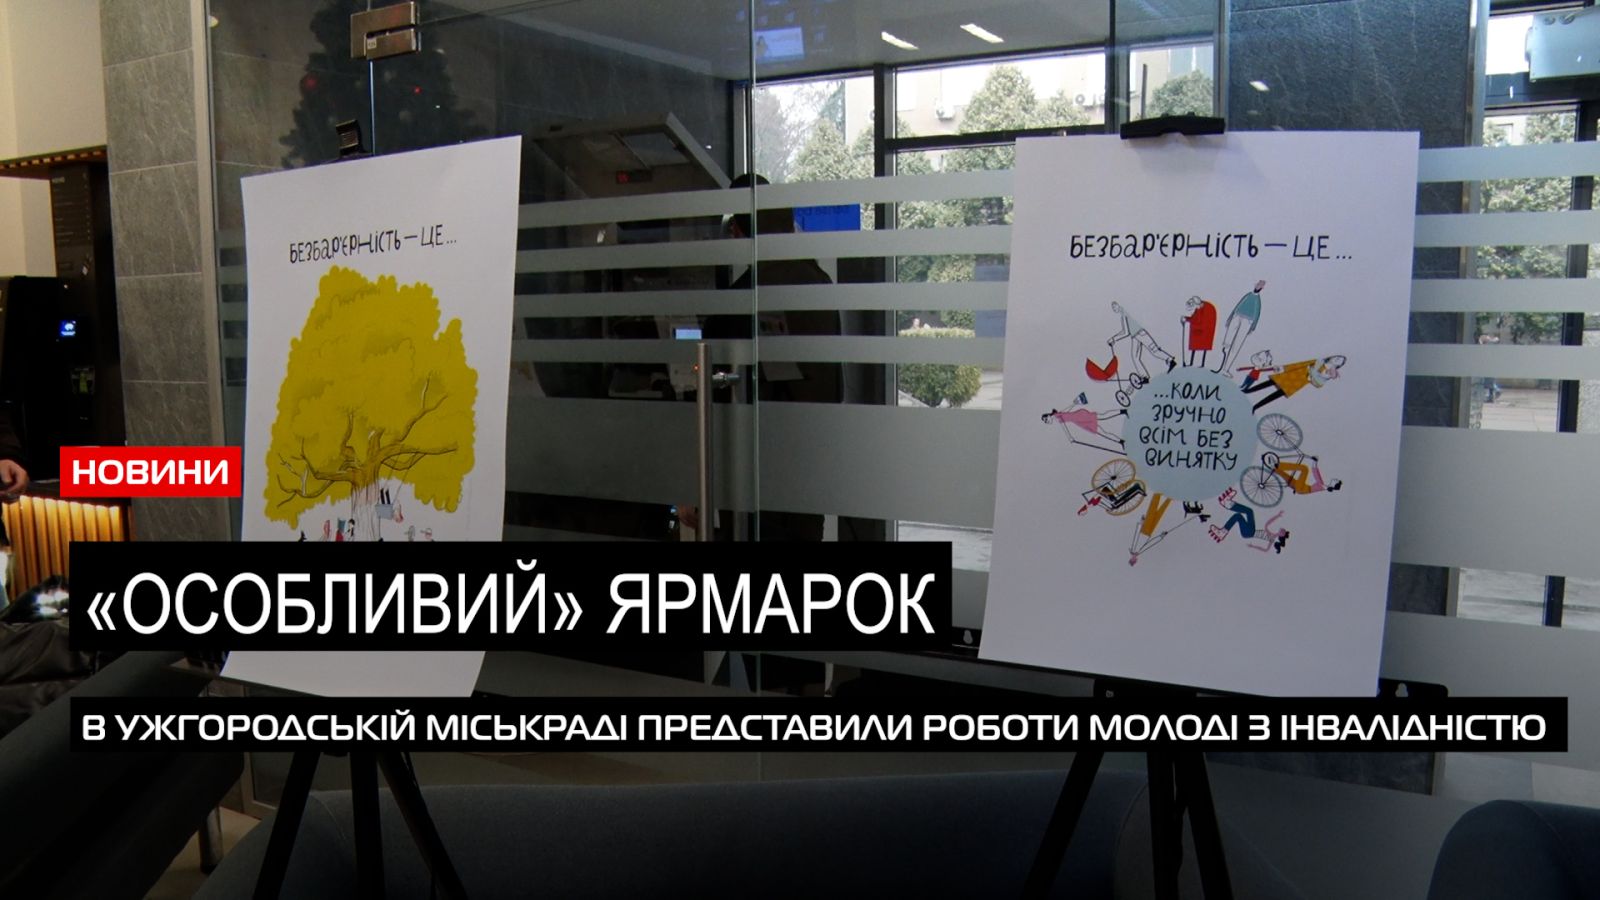  Особлива благодійність: молодь з інвалідністю презентувала свої роботи в Ужгородіській міськраді (ВІДЕО) 0